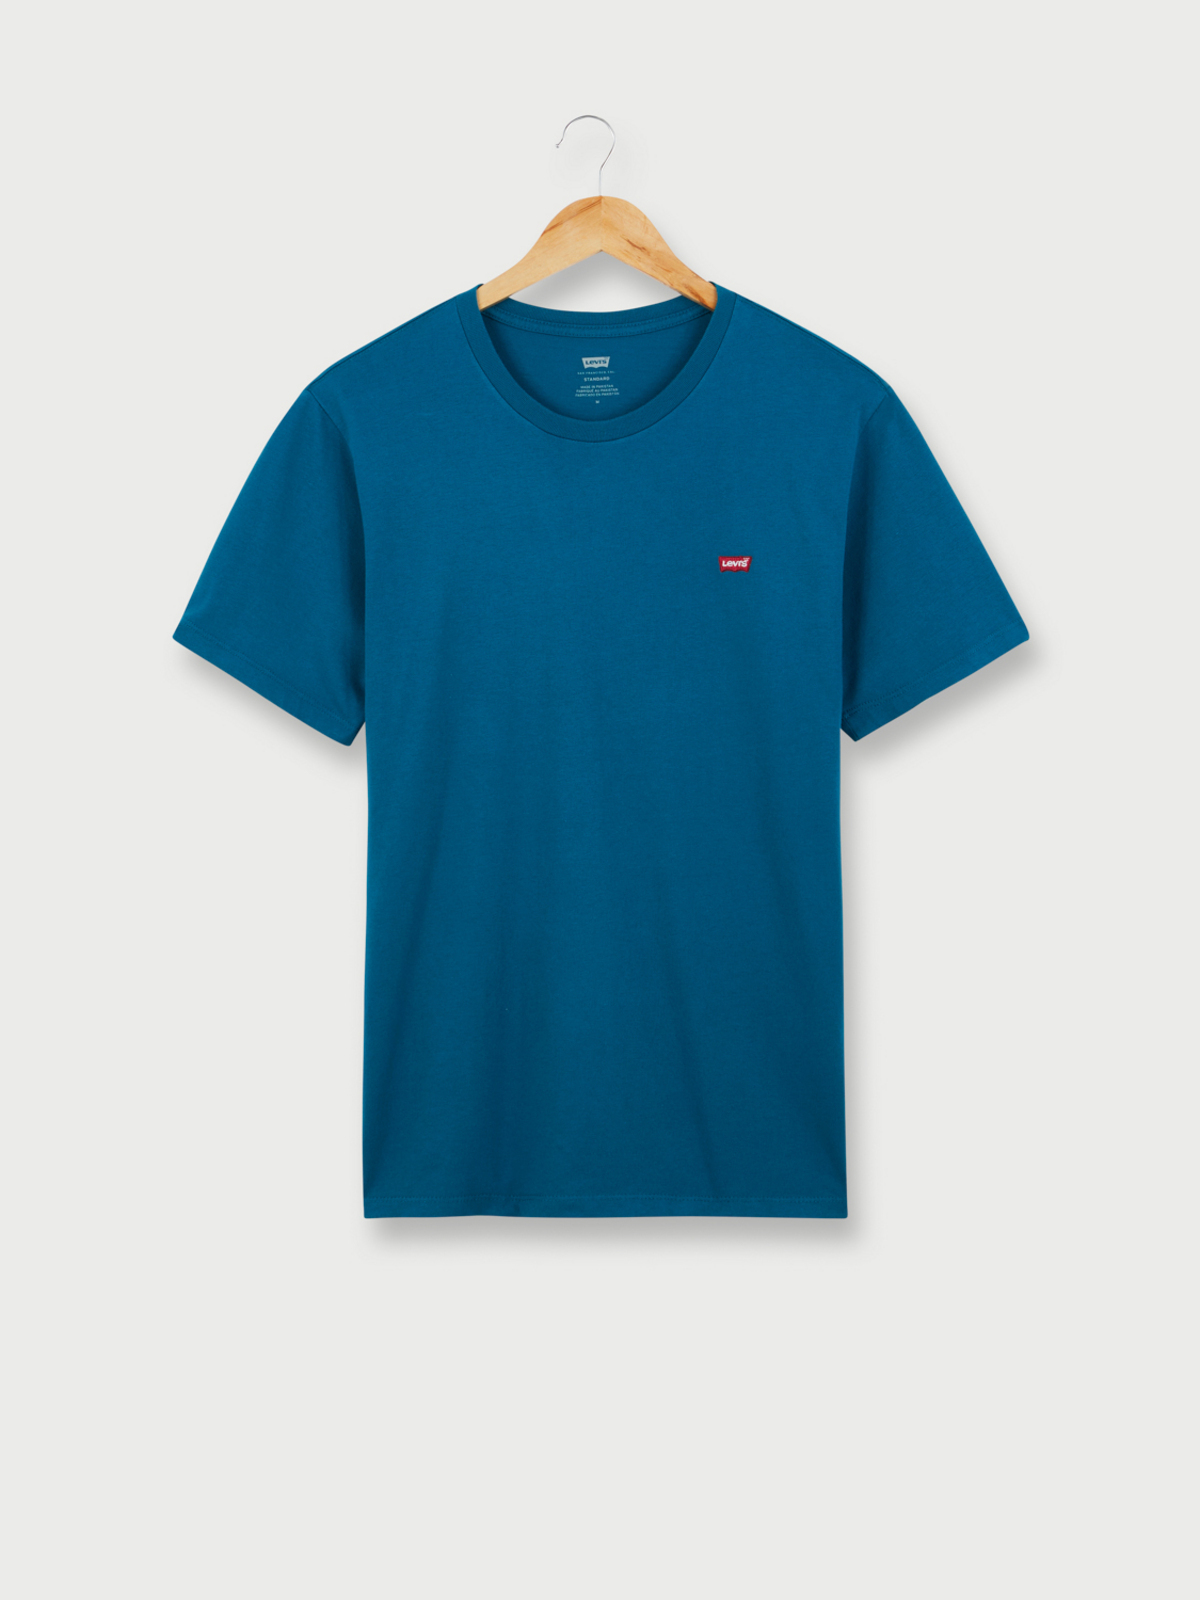 T-shirt Bleu Homme Levi's Graphic pas cher 